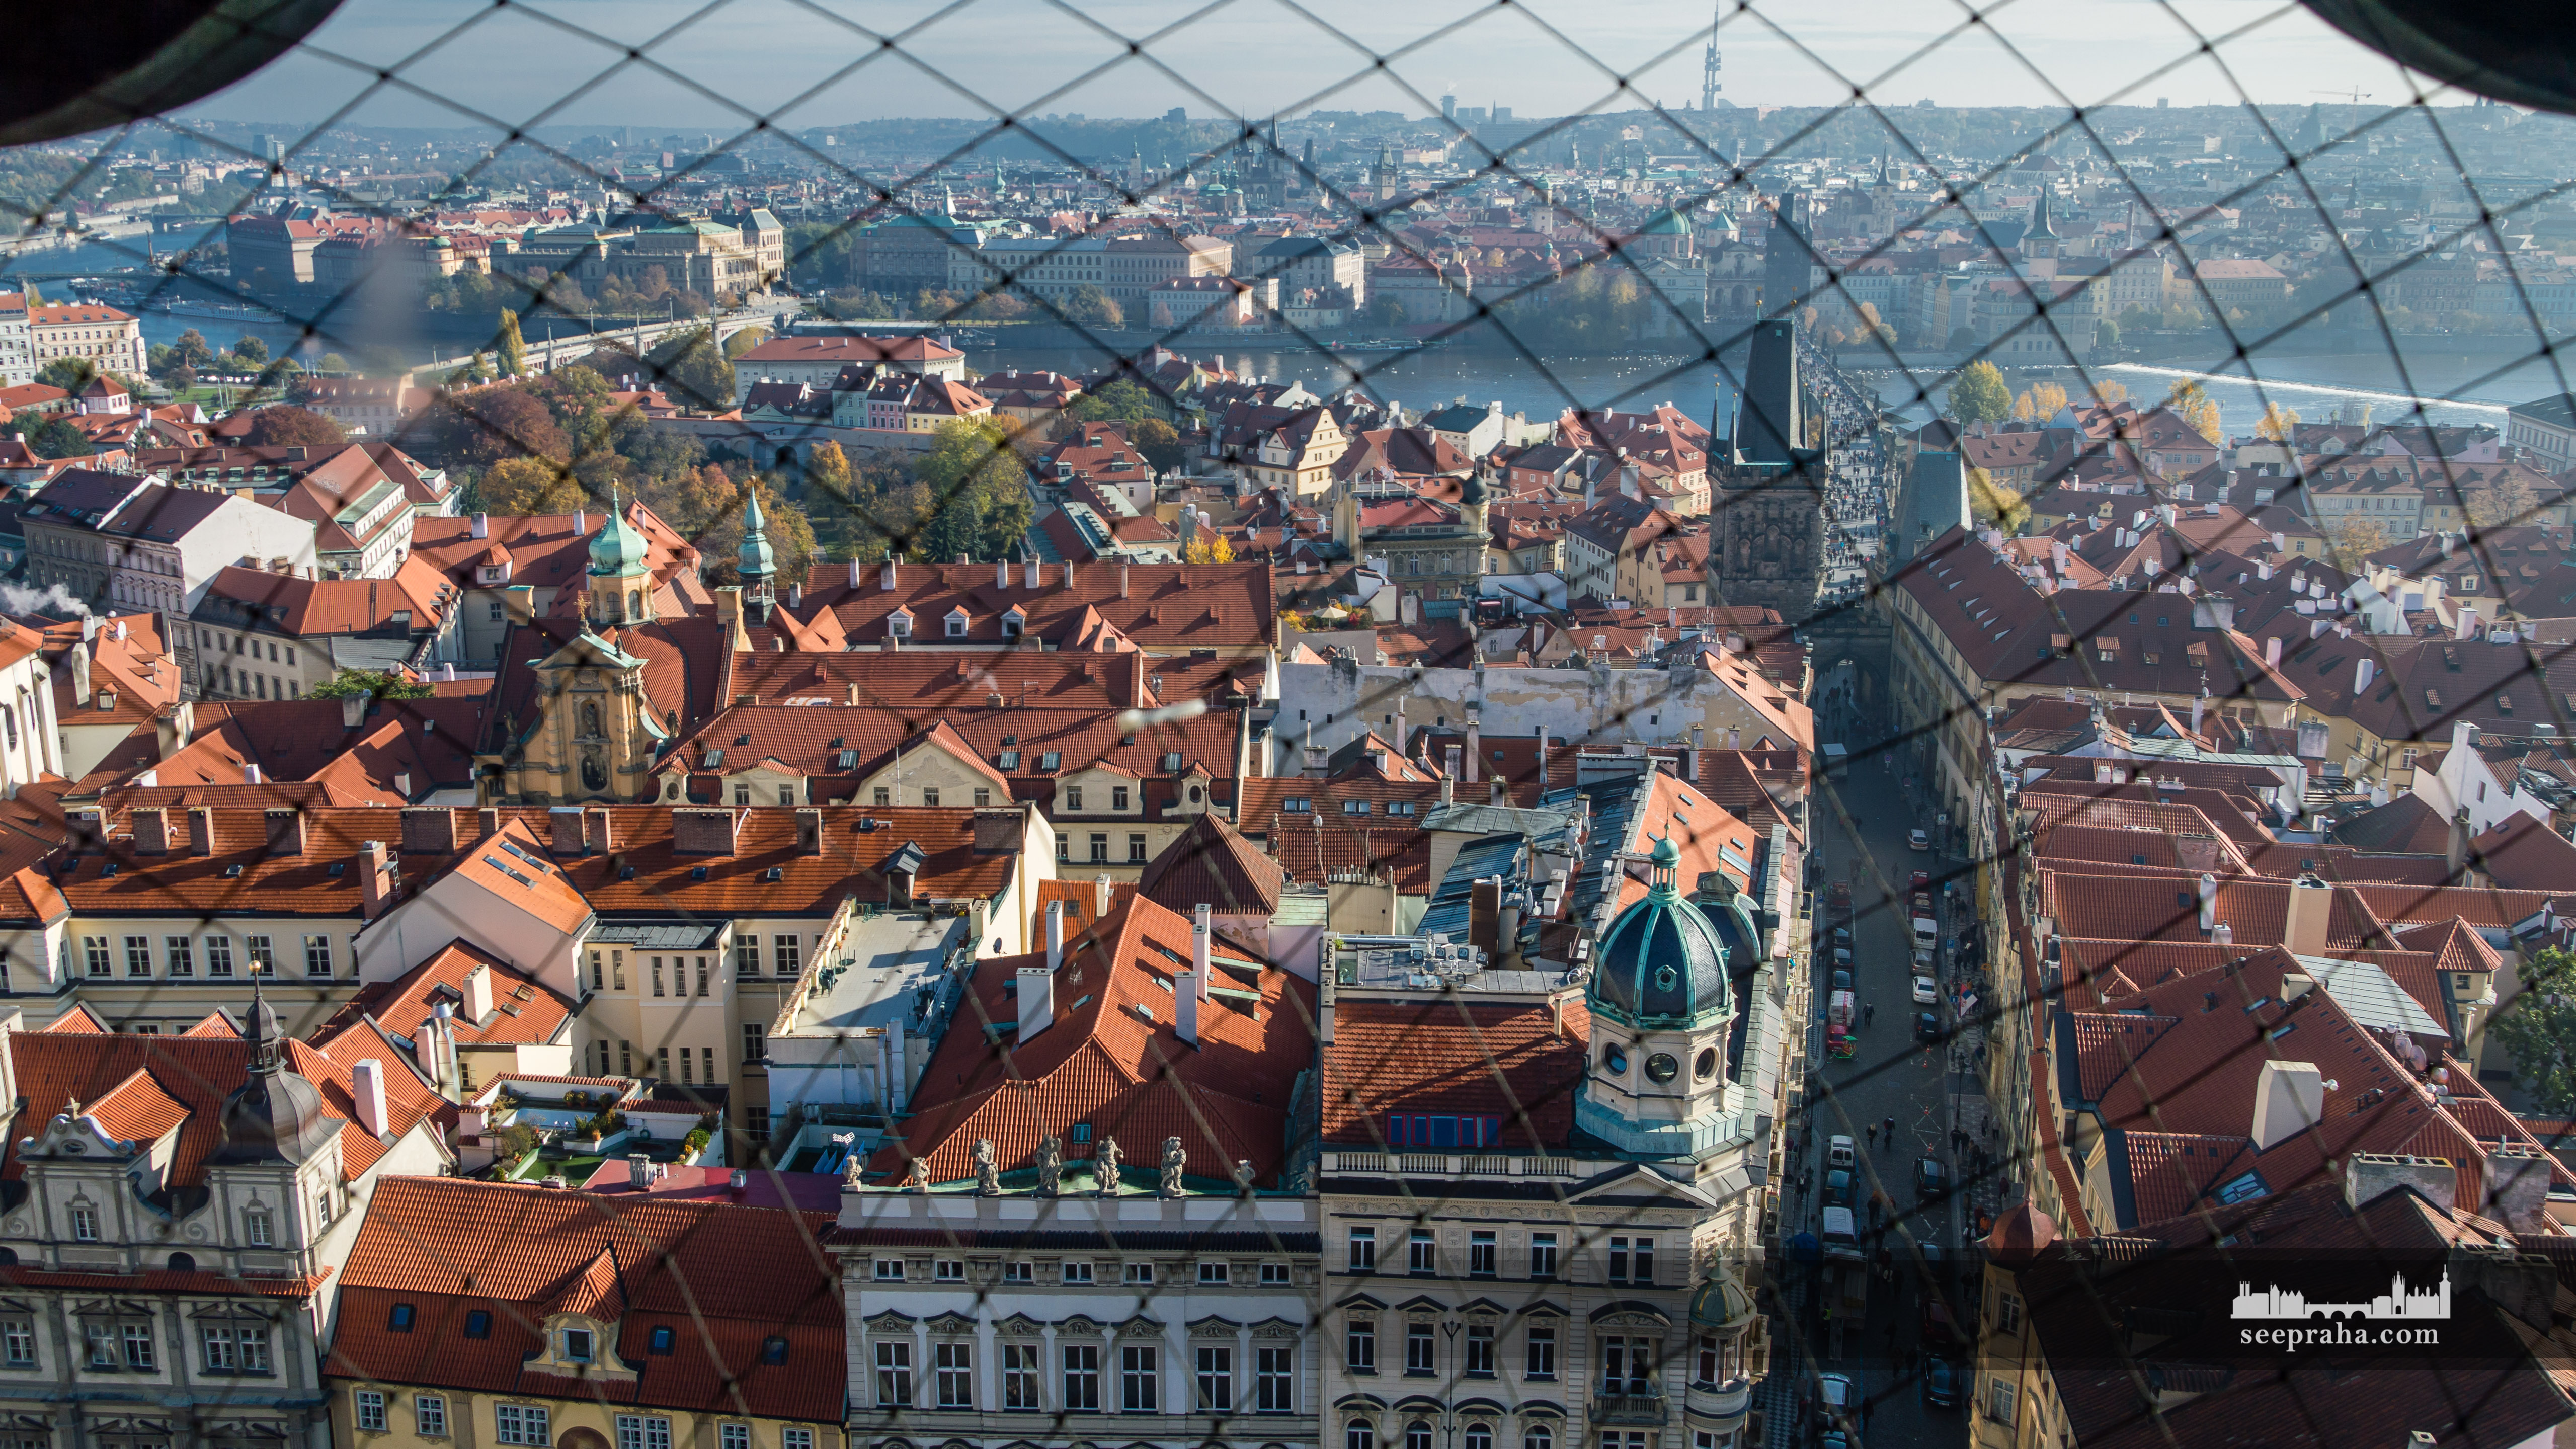 Widok ze szczytu dzwonnicy kościoła św. Mikołaja, Praga, Czechy